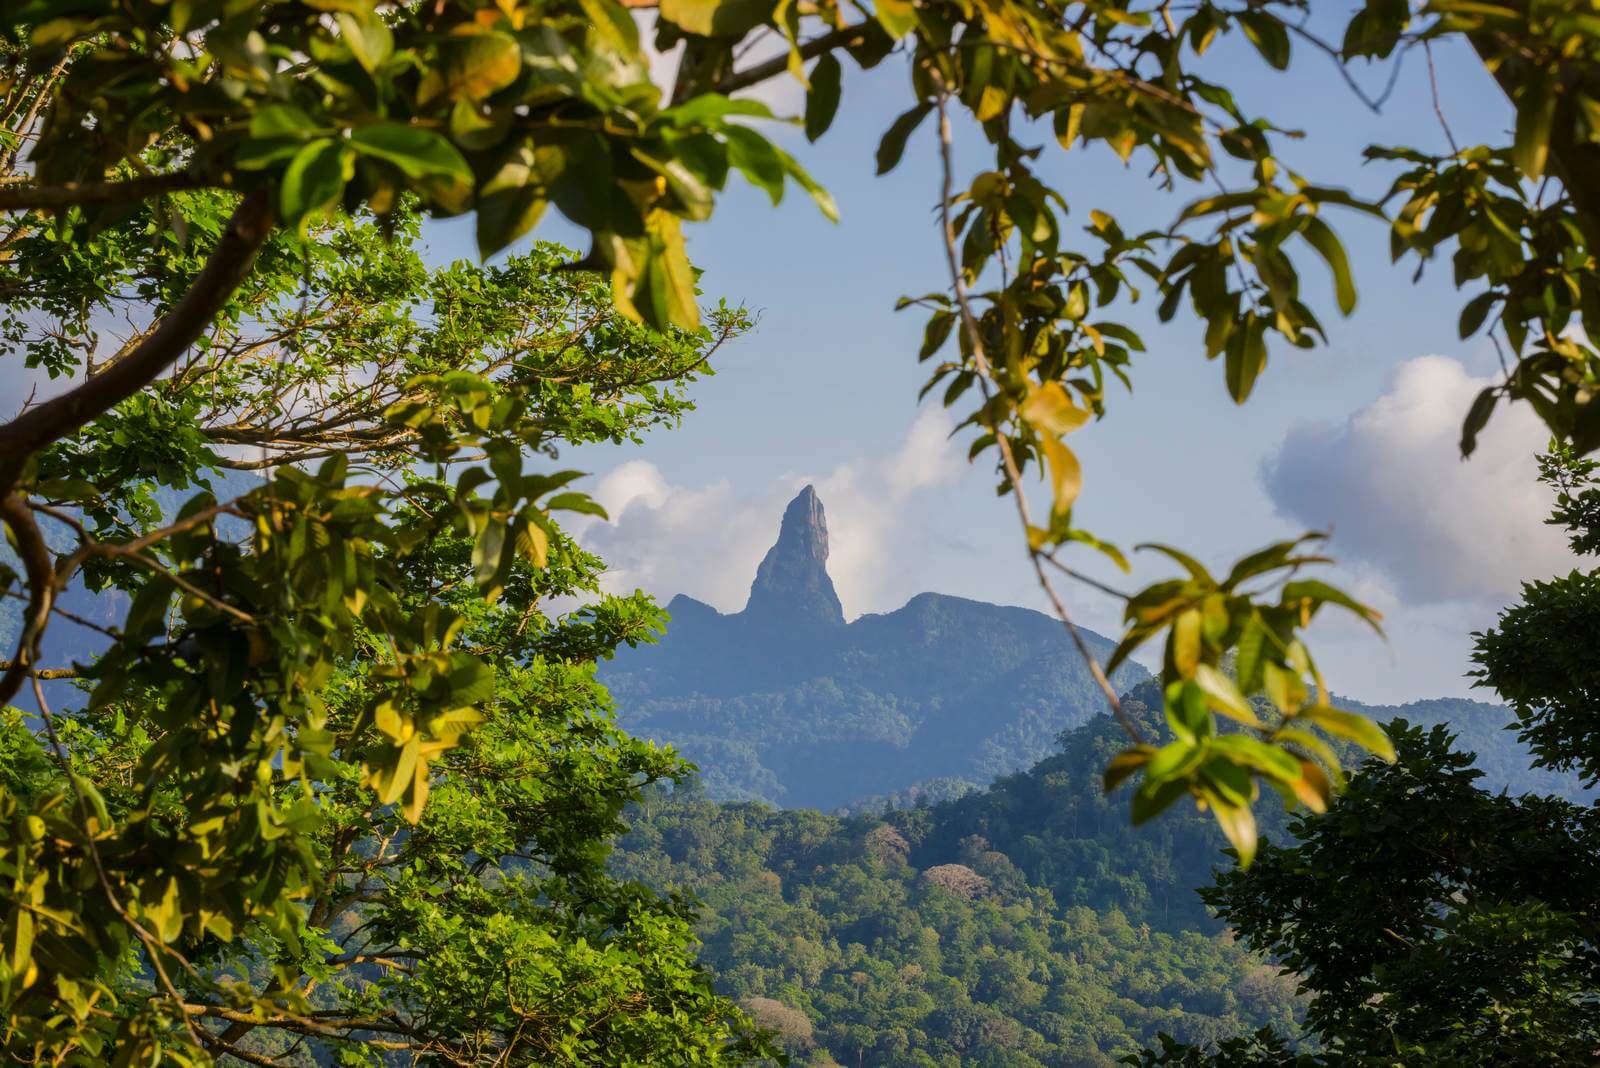 Foto: Bergige Regenwald-Landschaft auf Sao Tome - Bildrechte Matthias Graben - Lupe Reisen